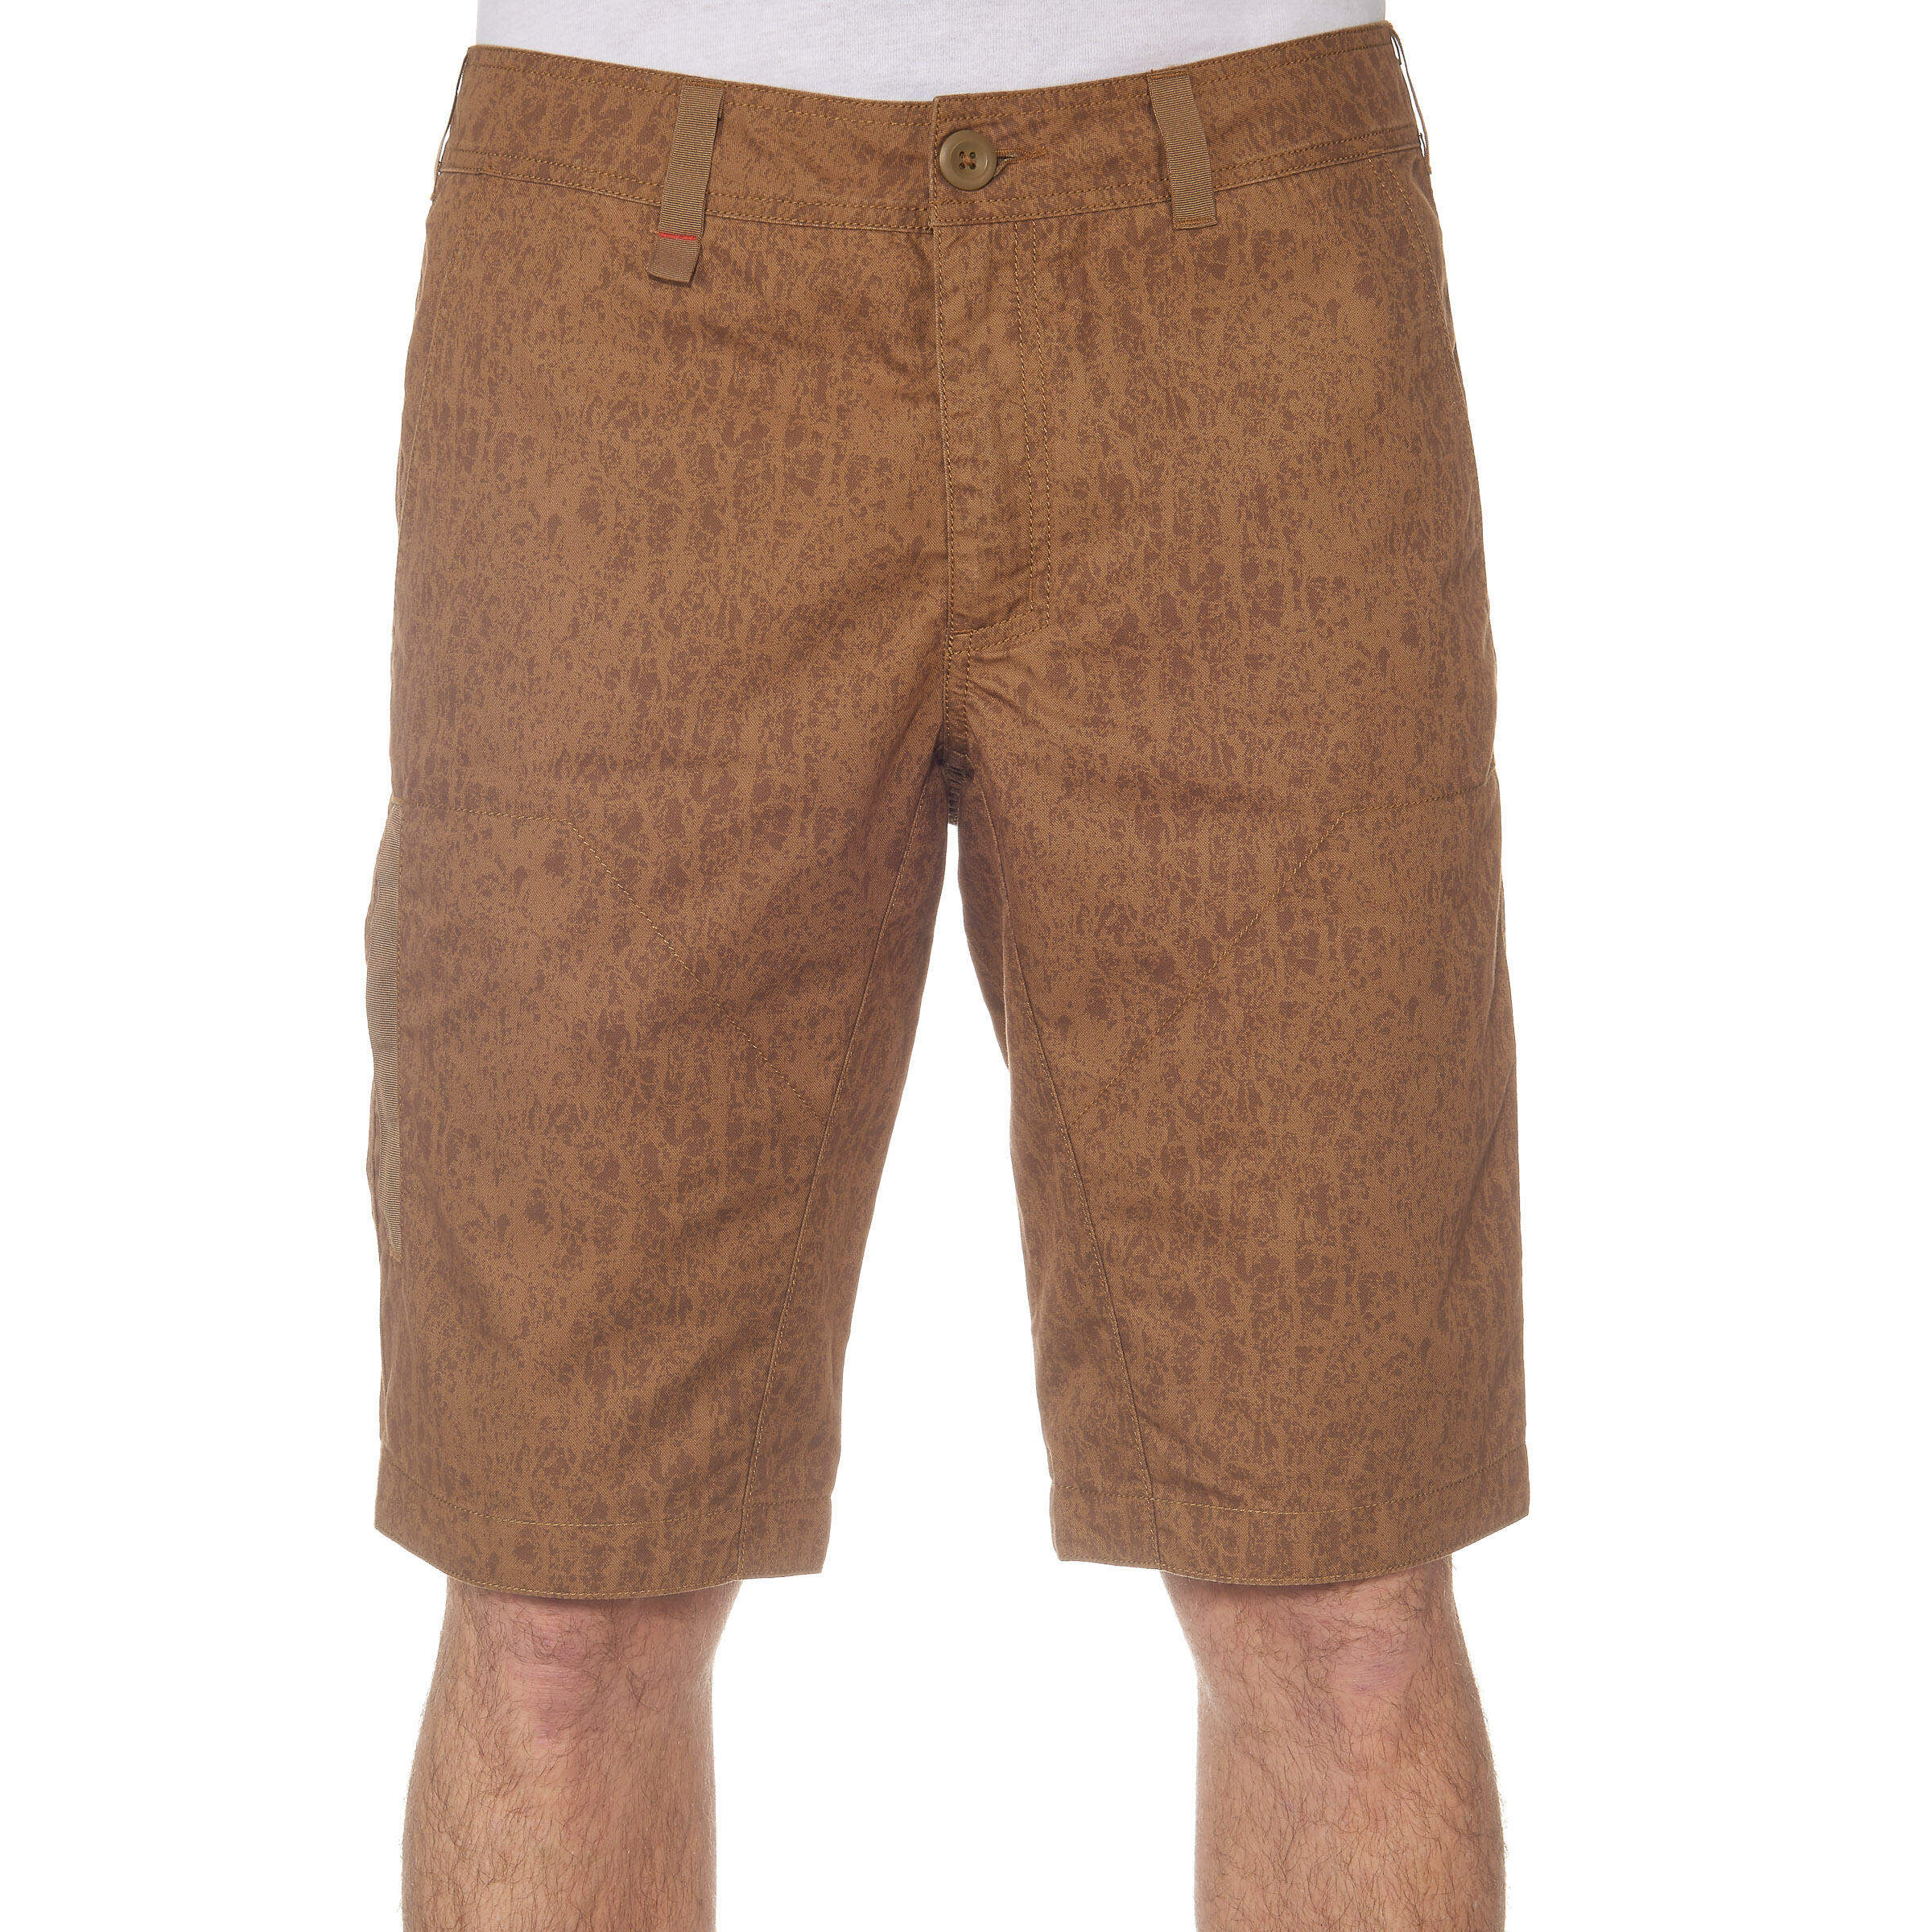 Arpenaz 100 Men's Hiking Shorts - Brown Motif 2/13